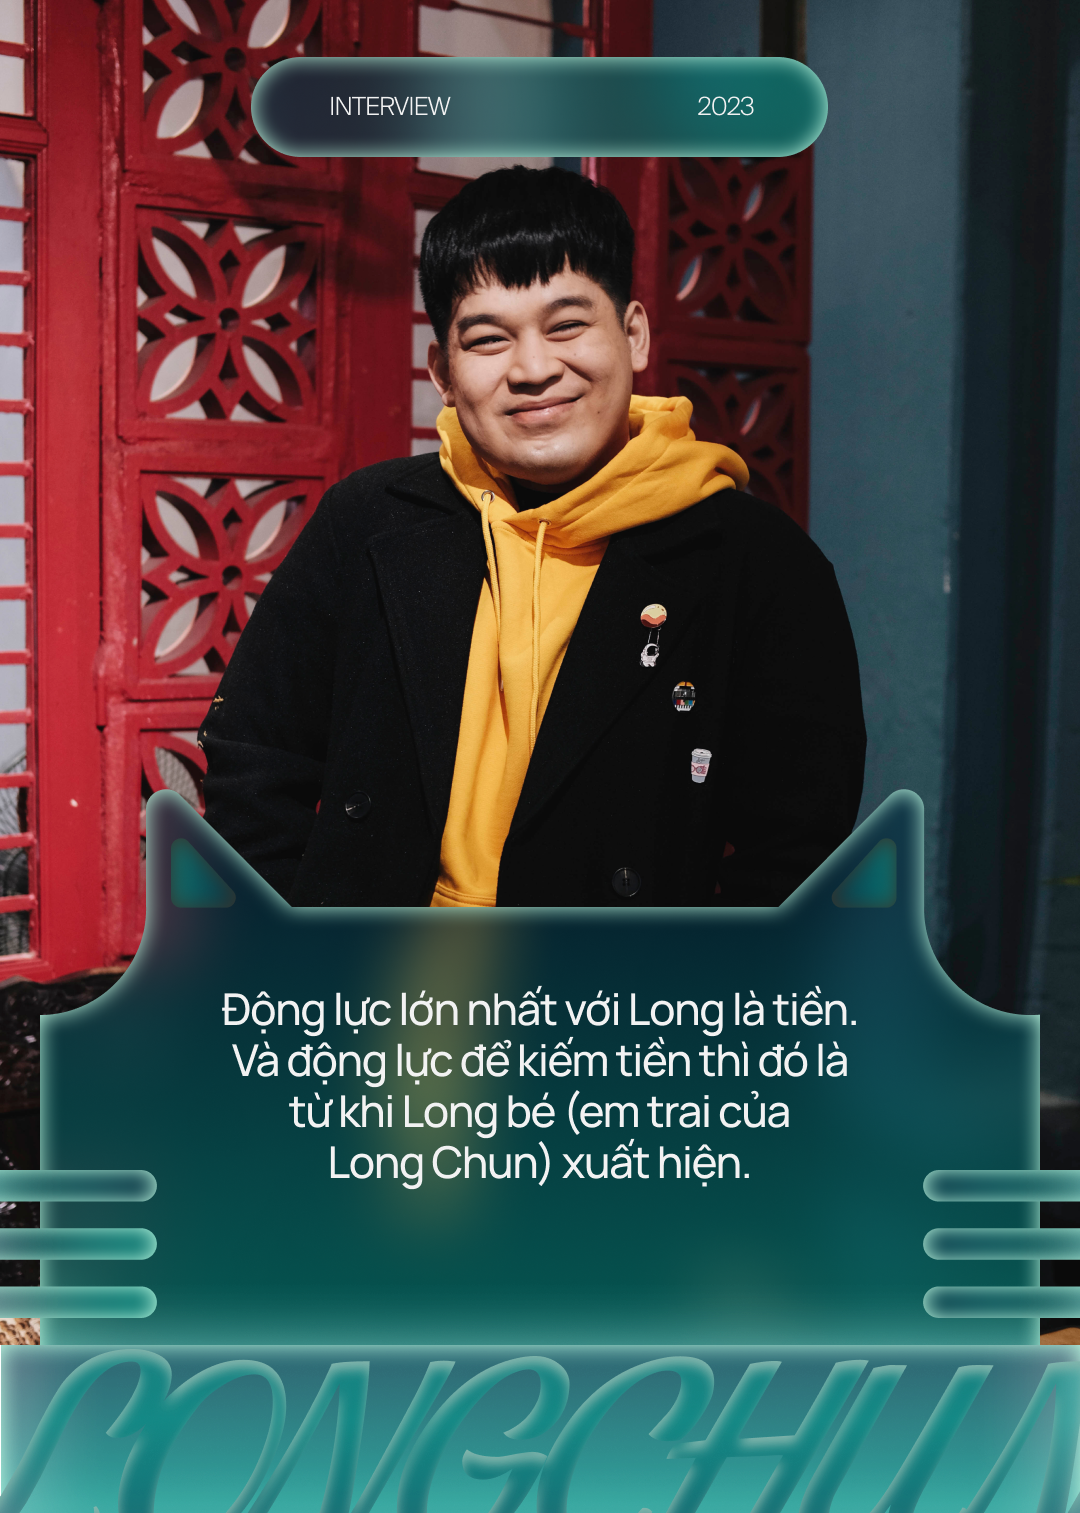 Long Chun: &quot;28 năm chưa từng được đón Tết cùng bố mẹ ruột&quot; và những trải lòng khi đối mặt với anti-fan - Ảnh 4.